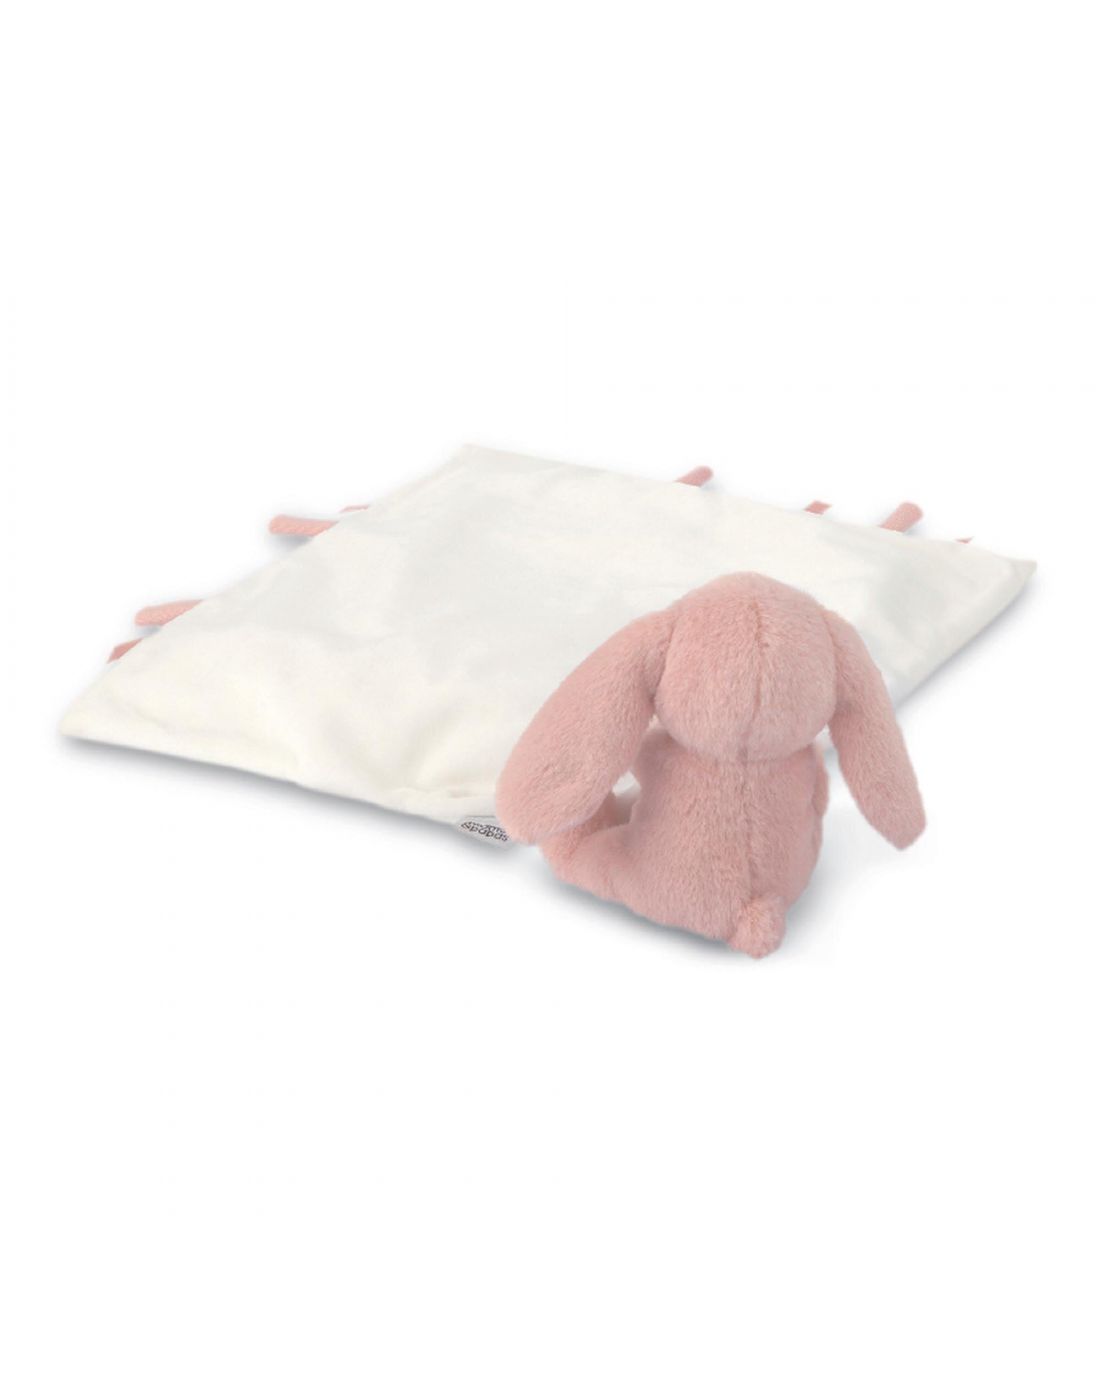 Mamas & Papas Soft Toy Comforter Pink Bunny